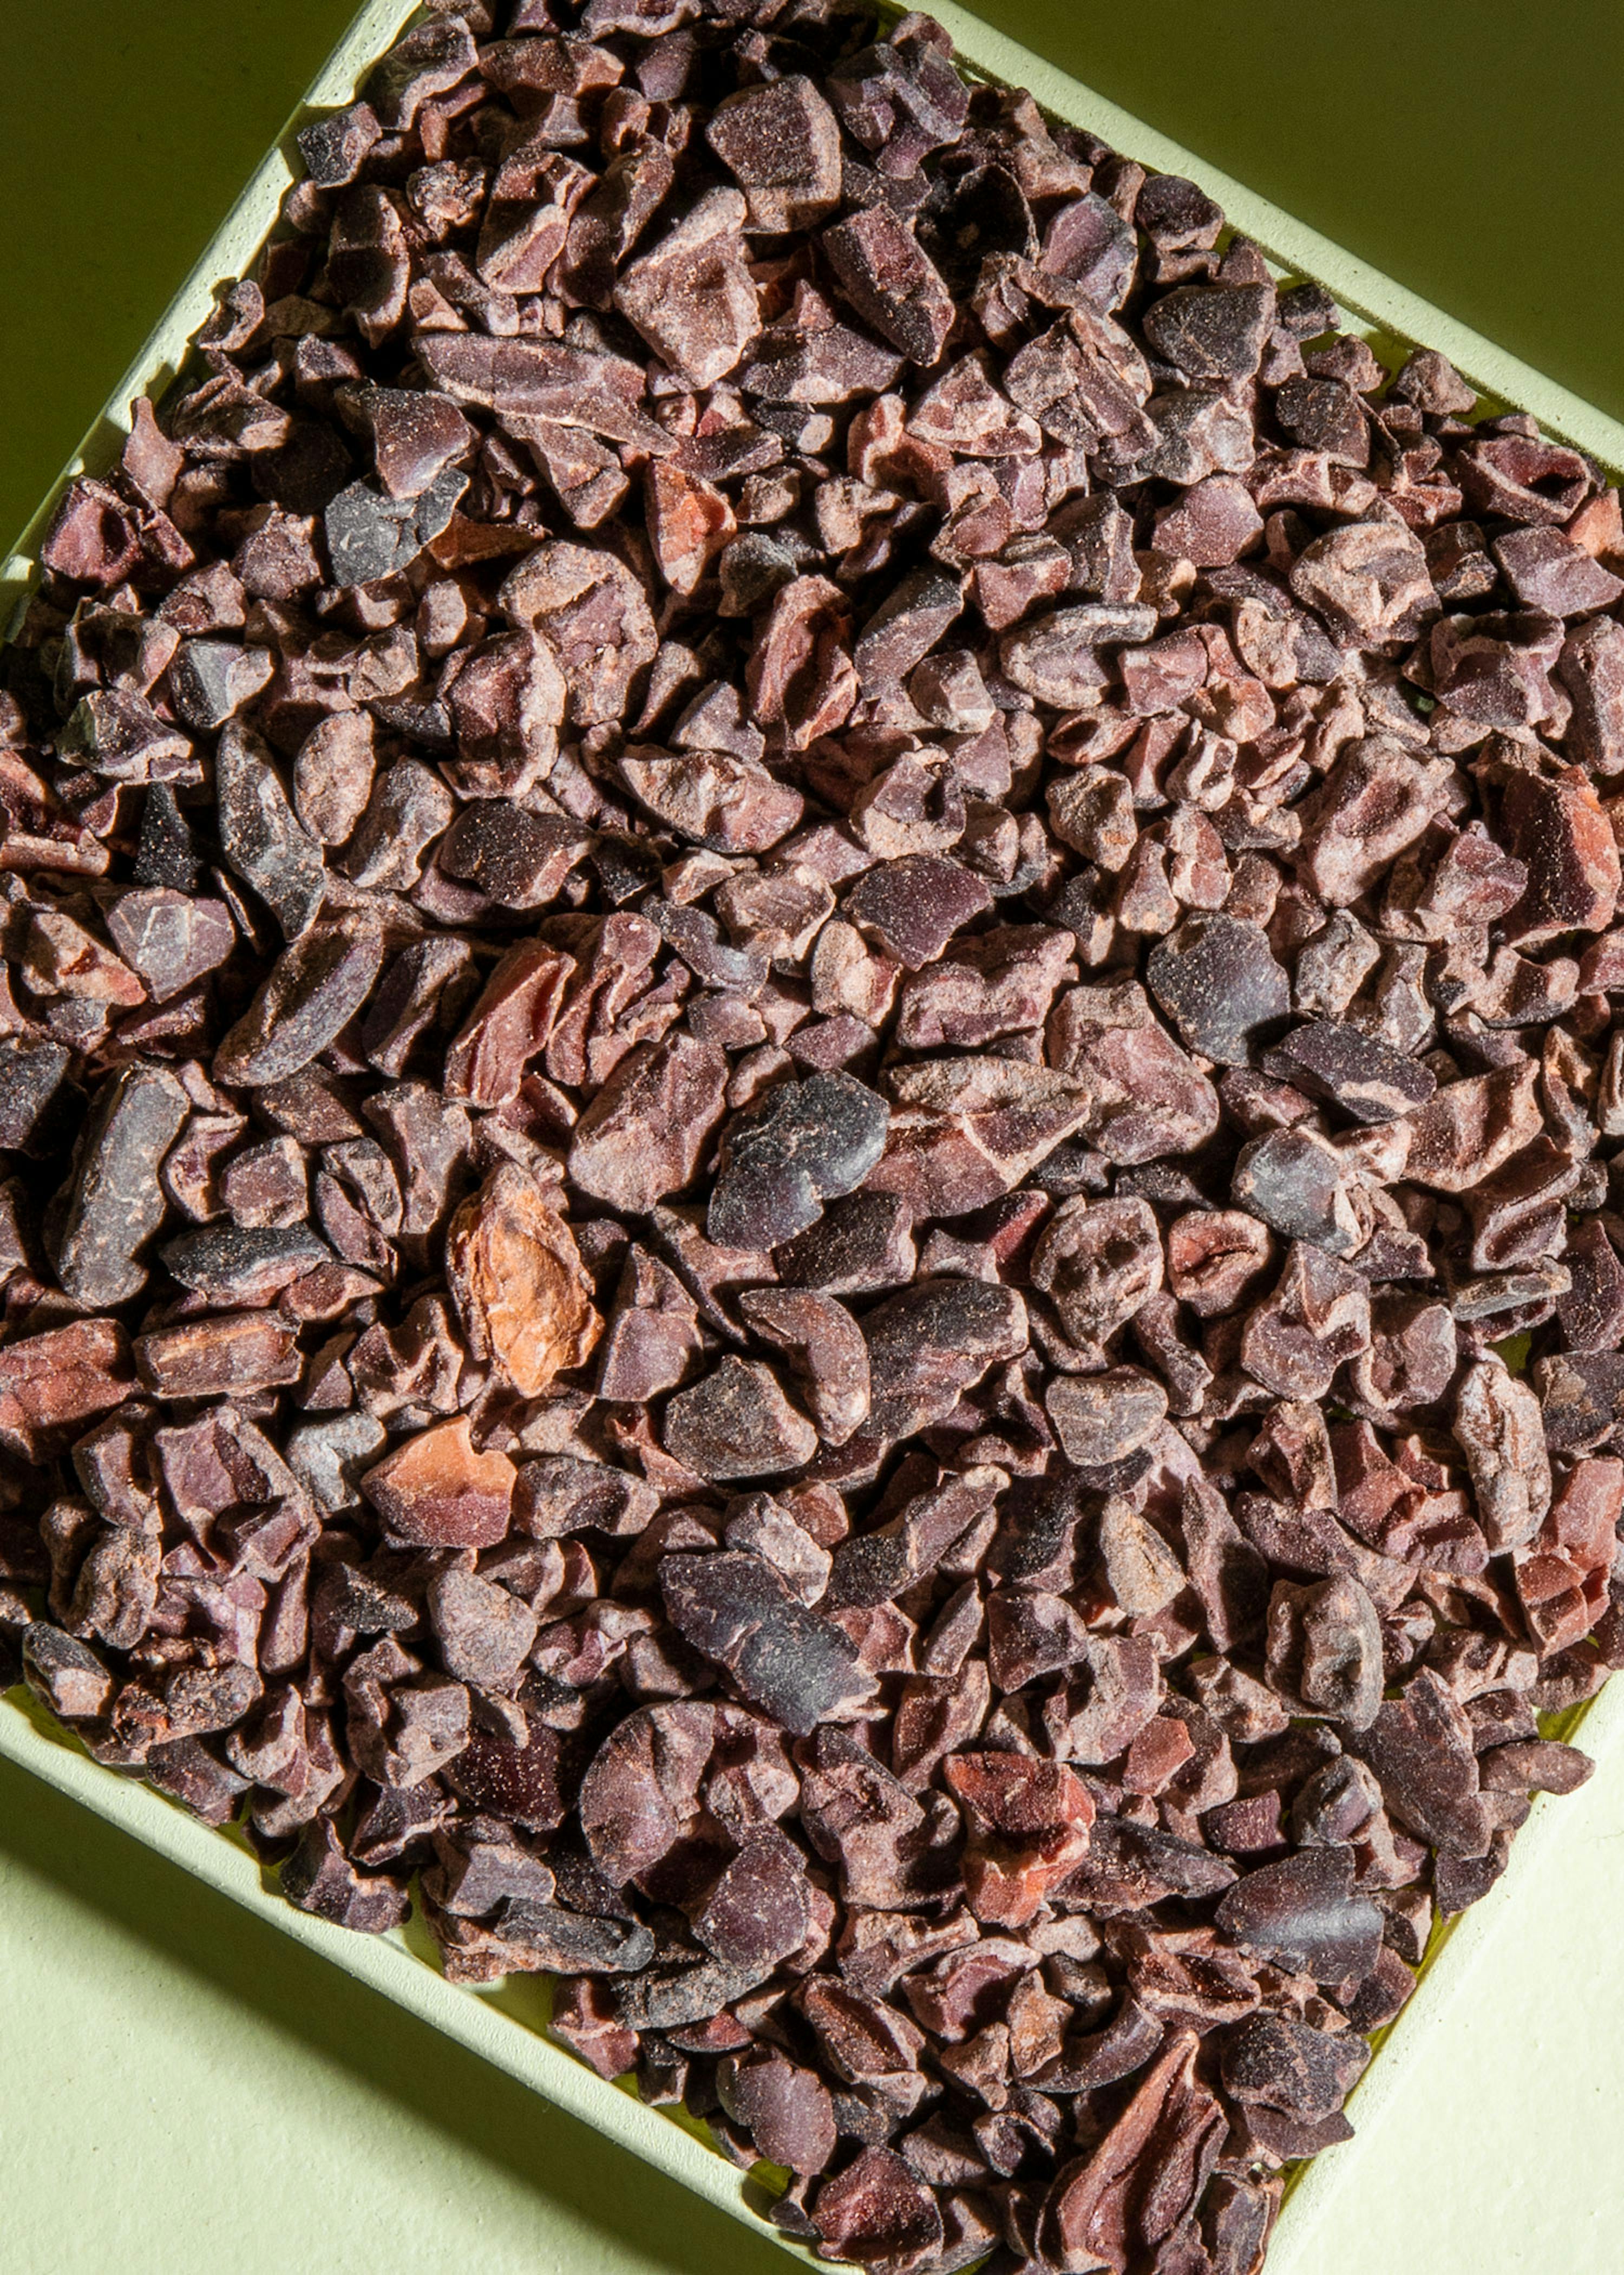 Beurre de cacao criollo cru bio équitable 5kg - Nutri Naturel